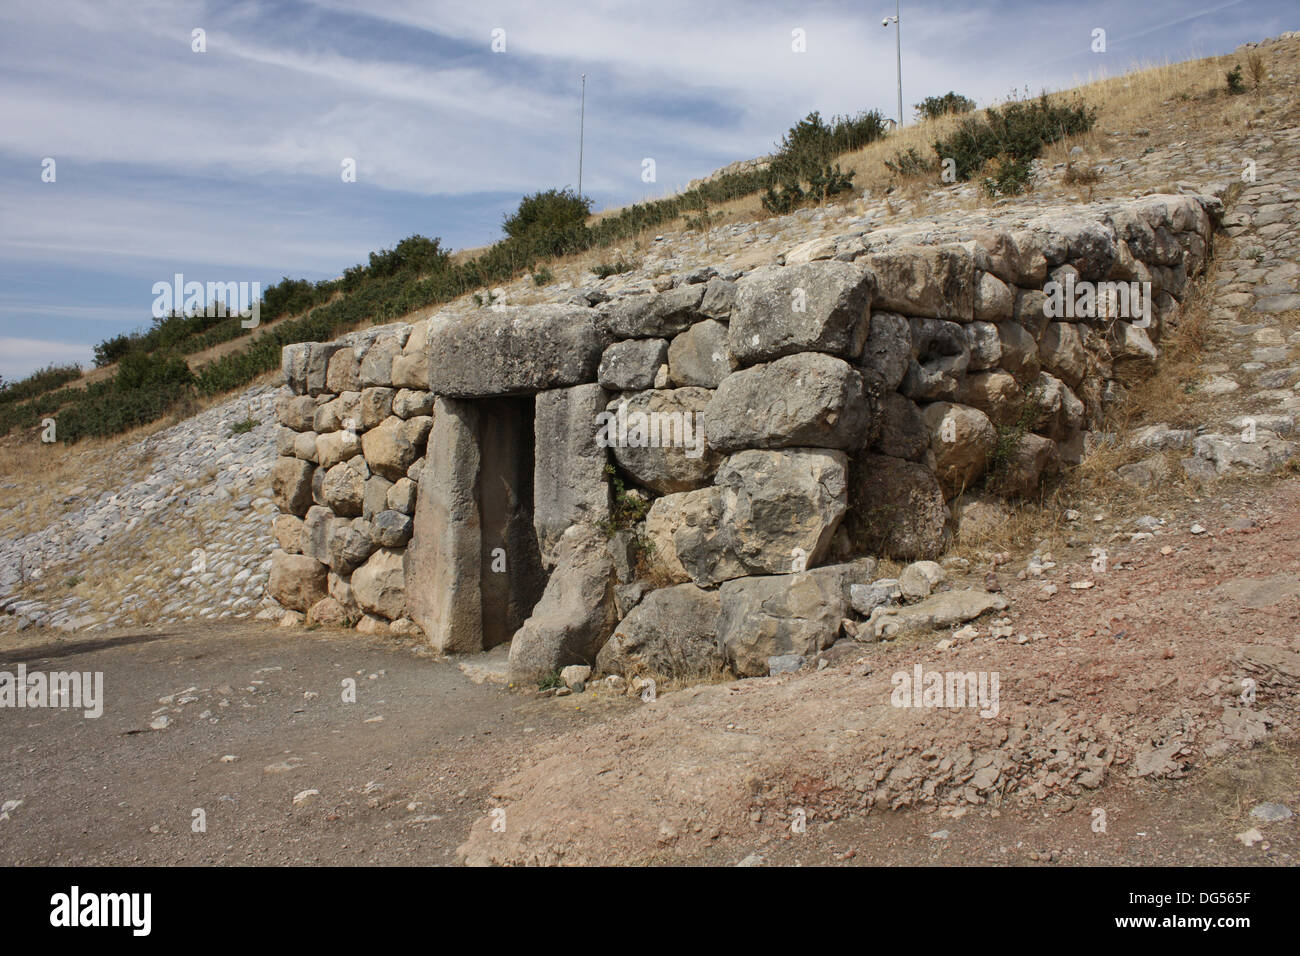 Der Eingang zum Tunnel durchquert der Yerkapi Wall in der antiken hethitischen Stadt von Hattusa in der Türkei. Stockfoto